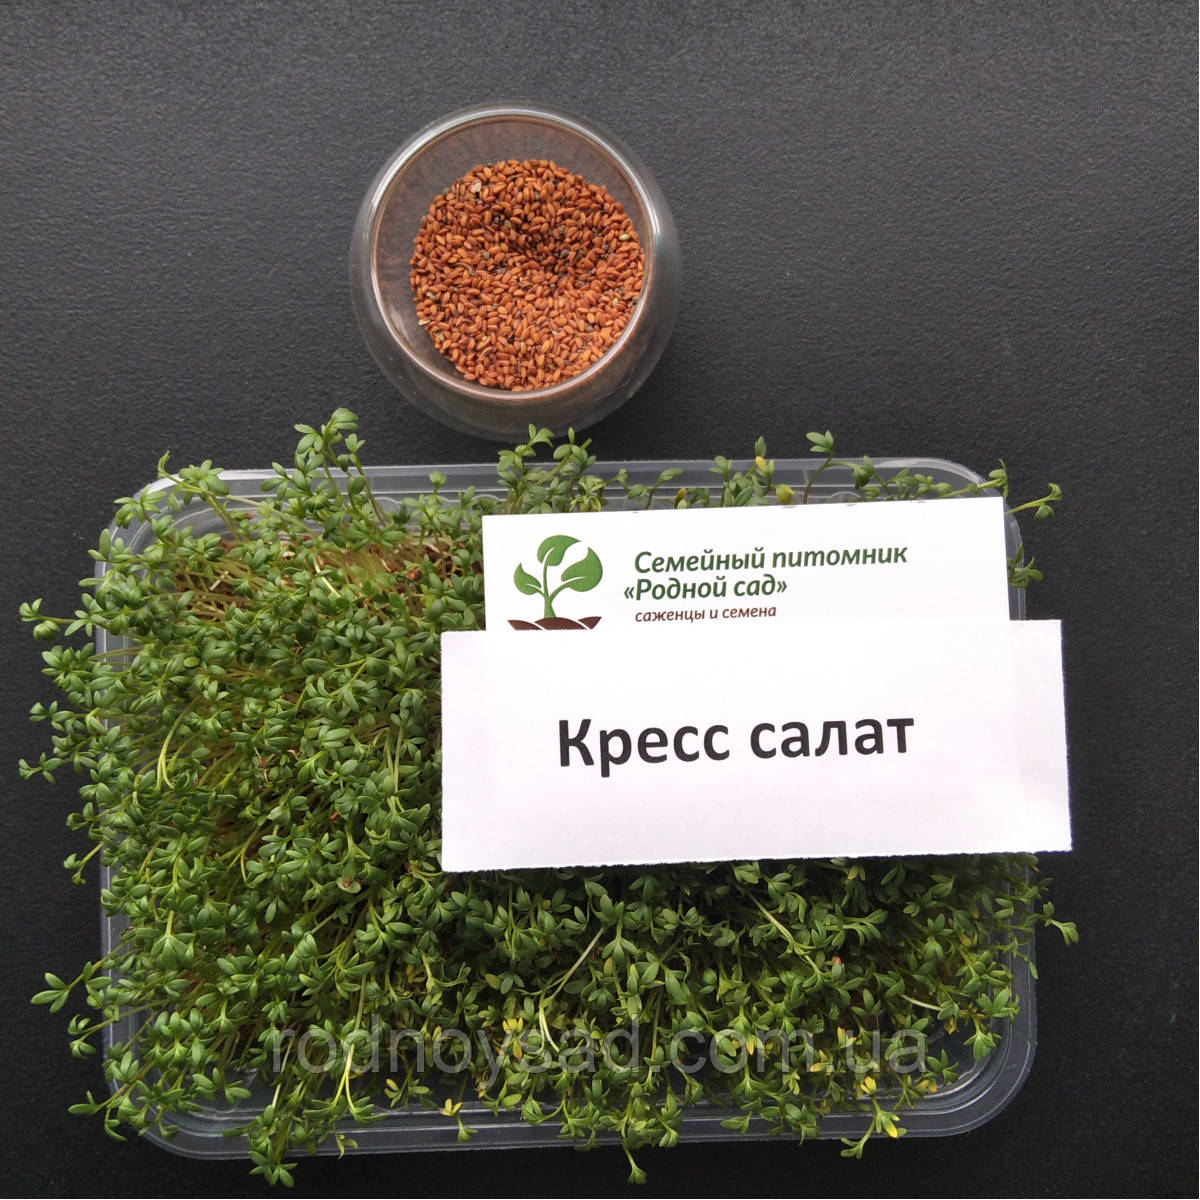 Крес салат насіння для мікрозелені (5 грамів)